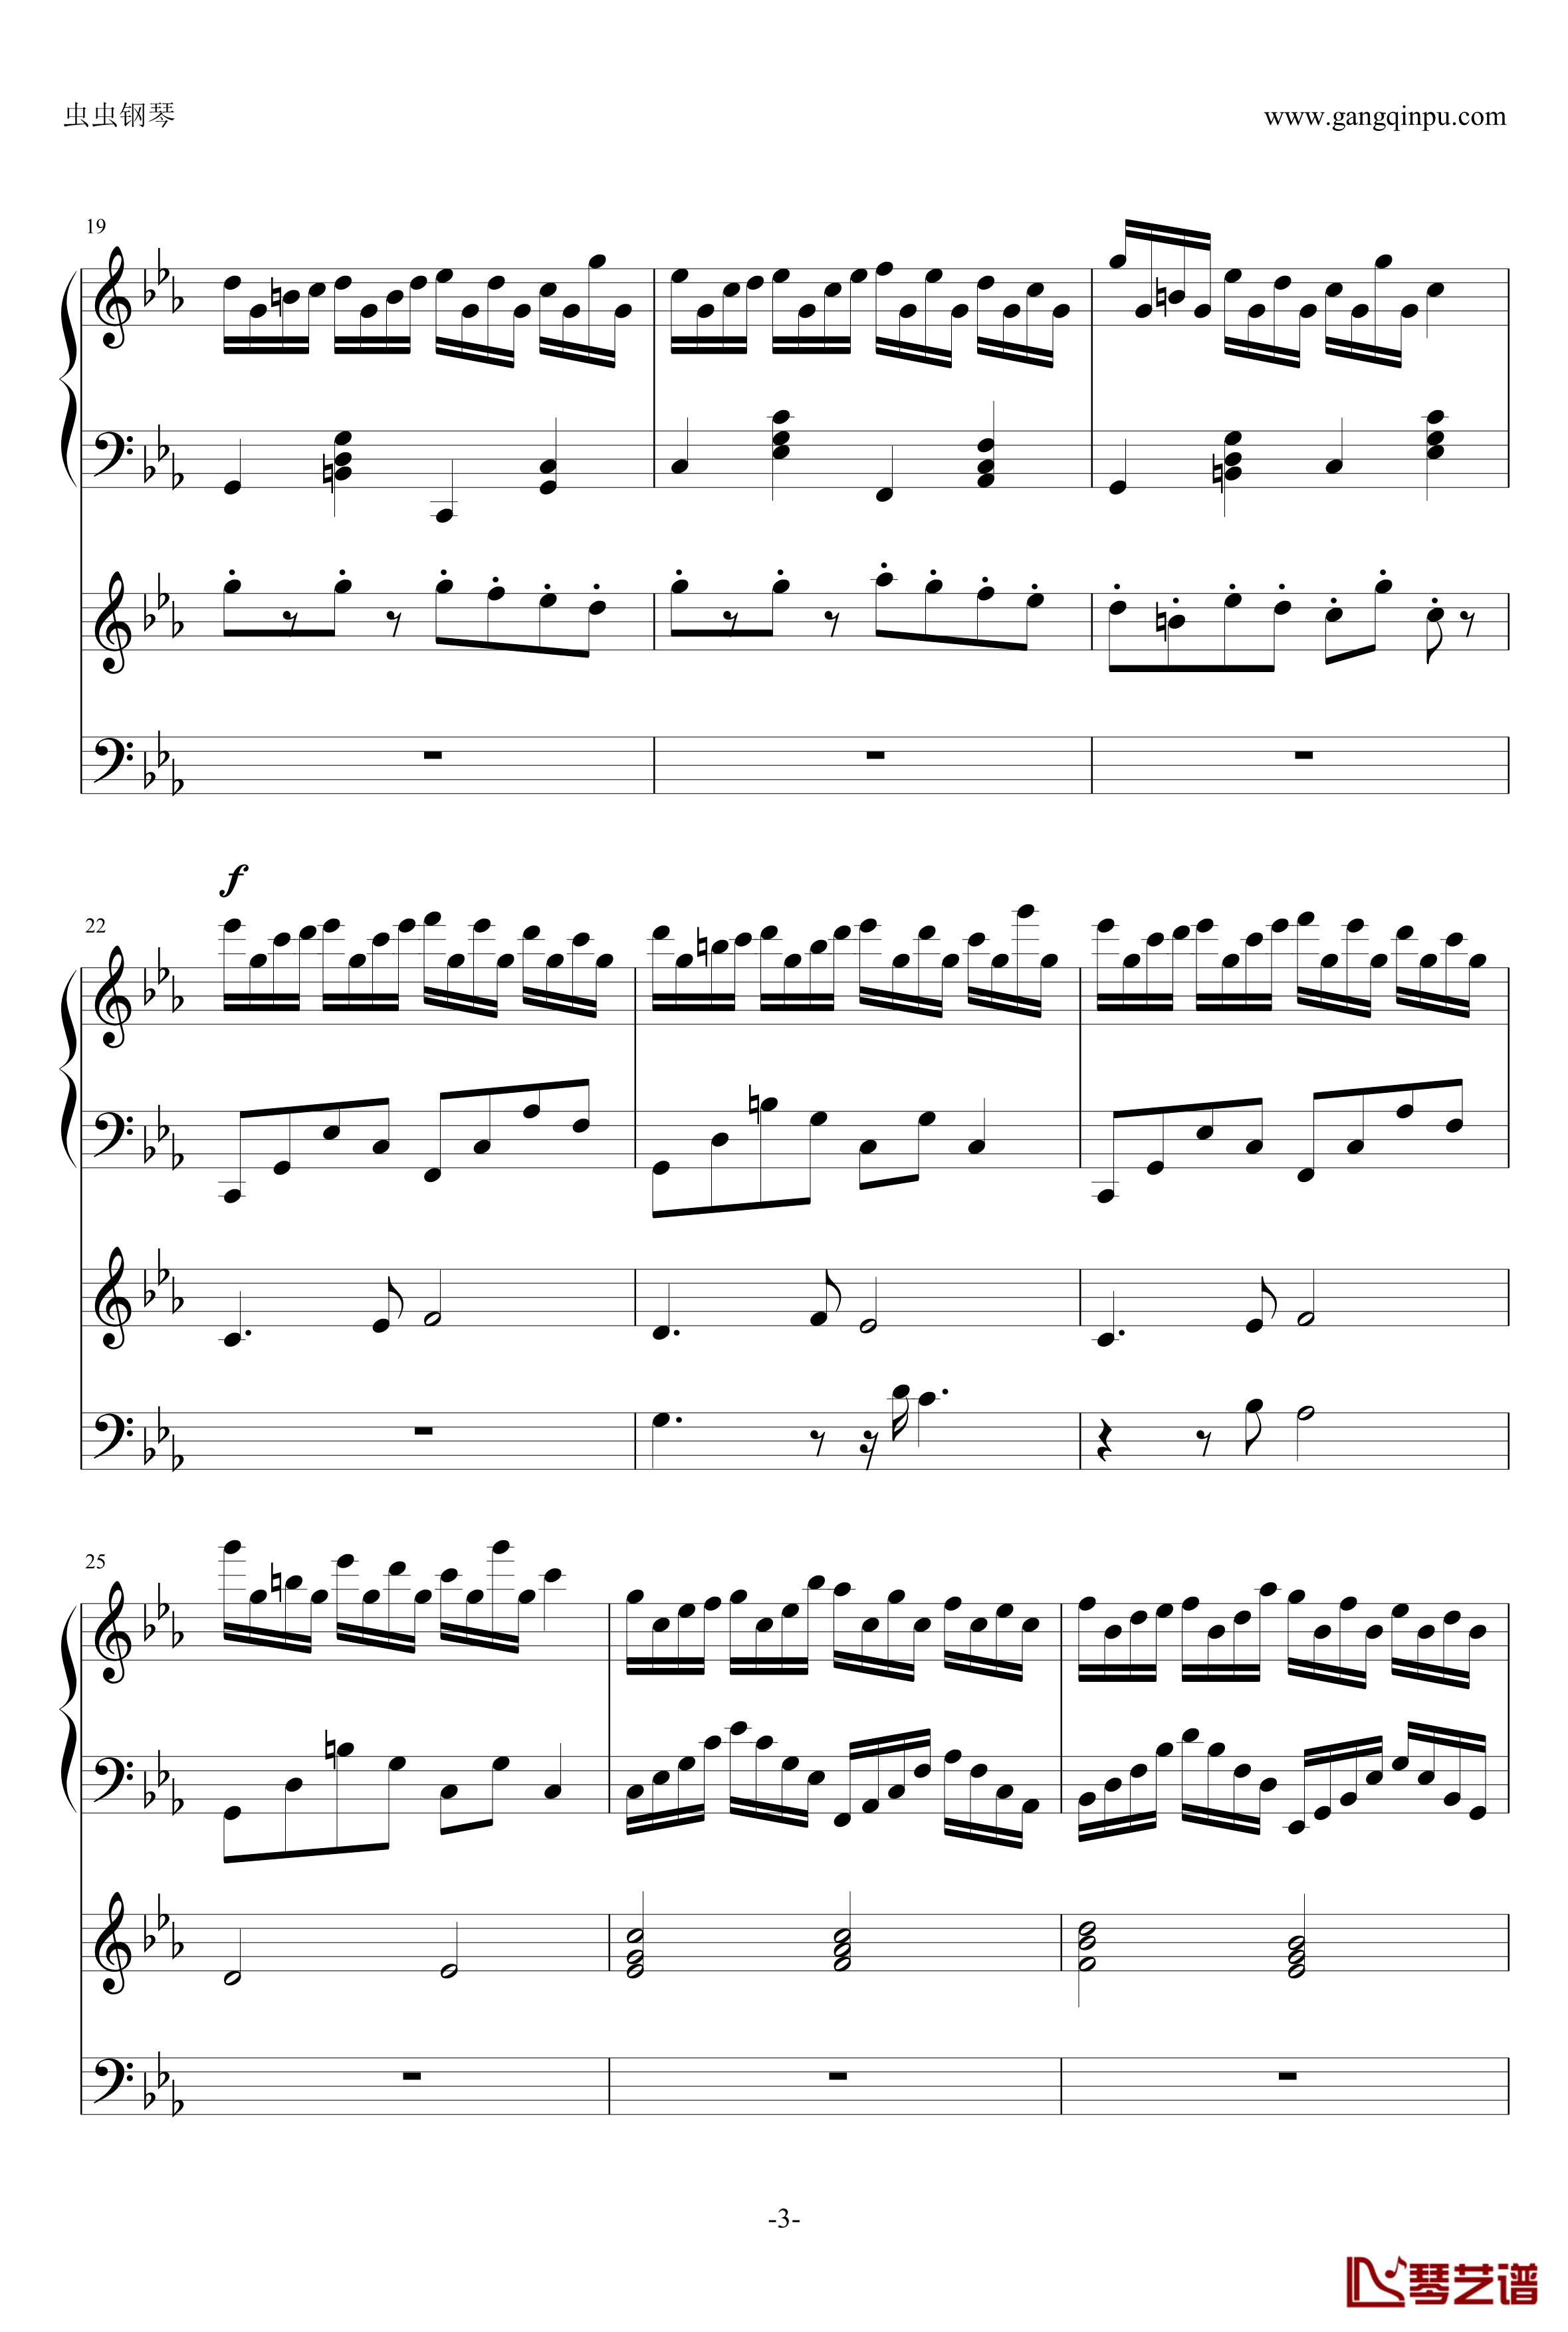 克罗地亚狂想曲钢琴谱-钢琴电子琴无和弦合奏-马克西姆-Maksim·Mrvica3